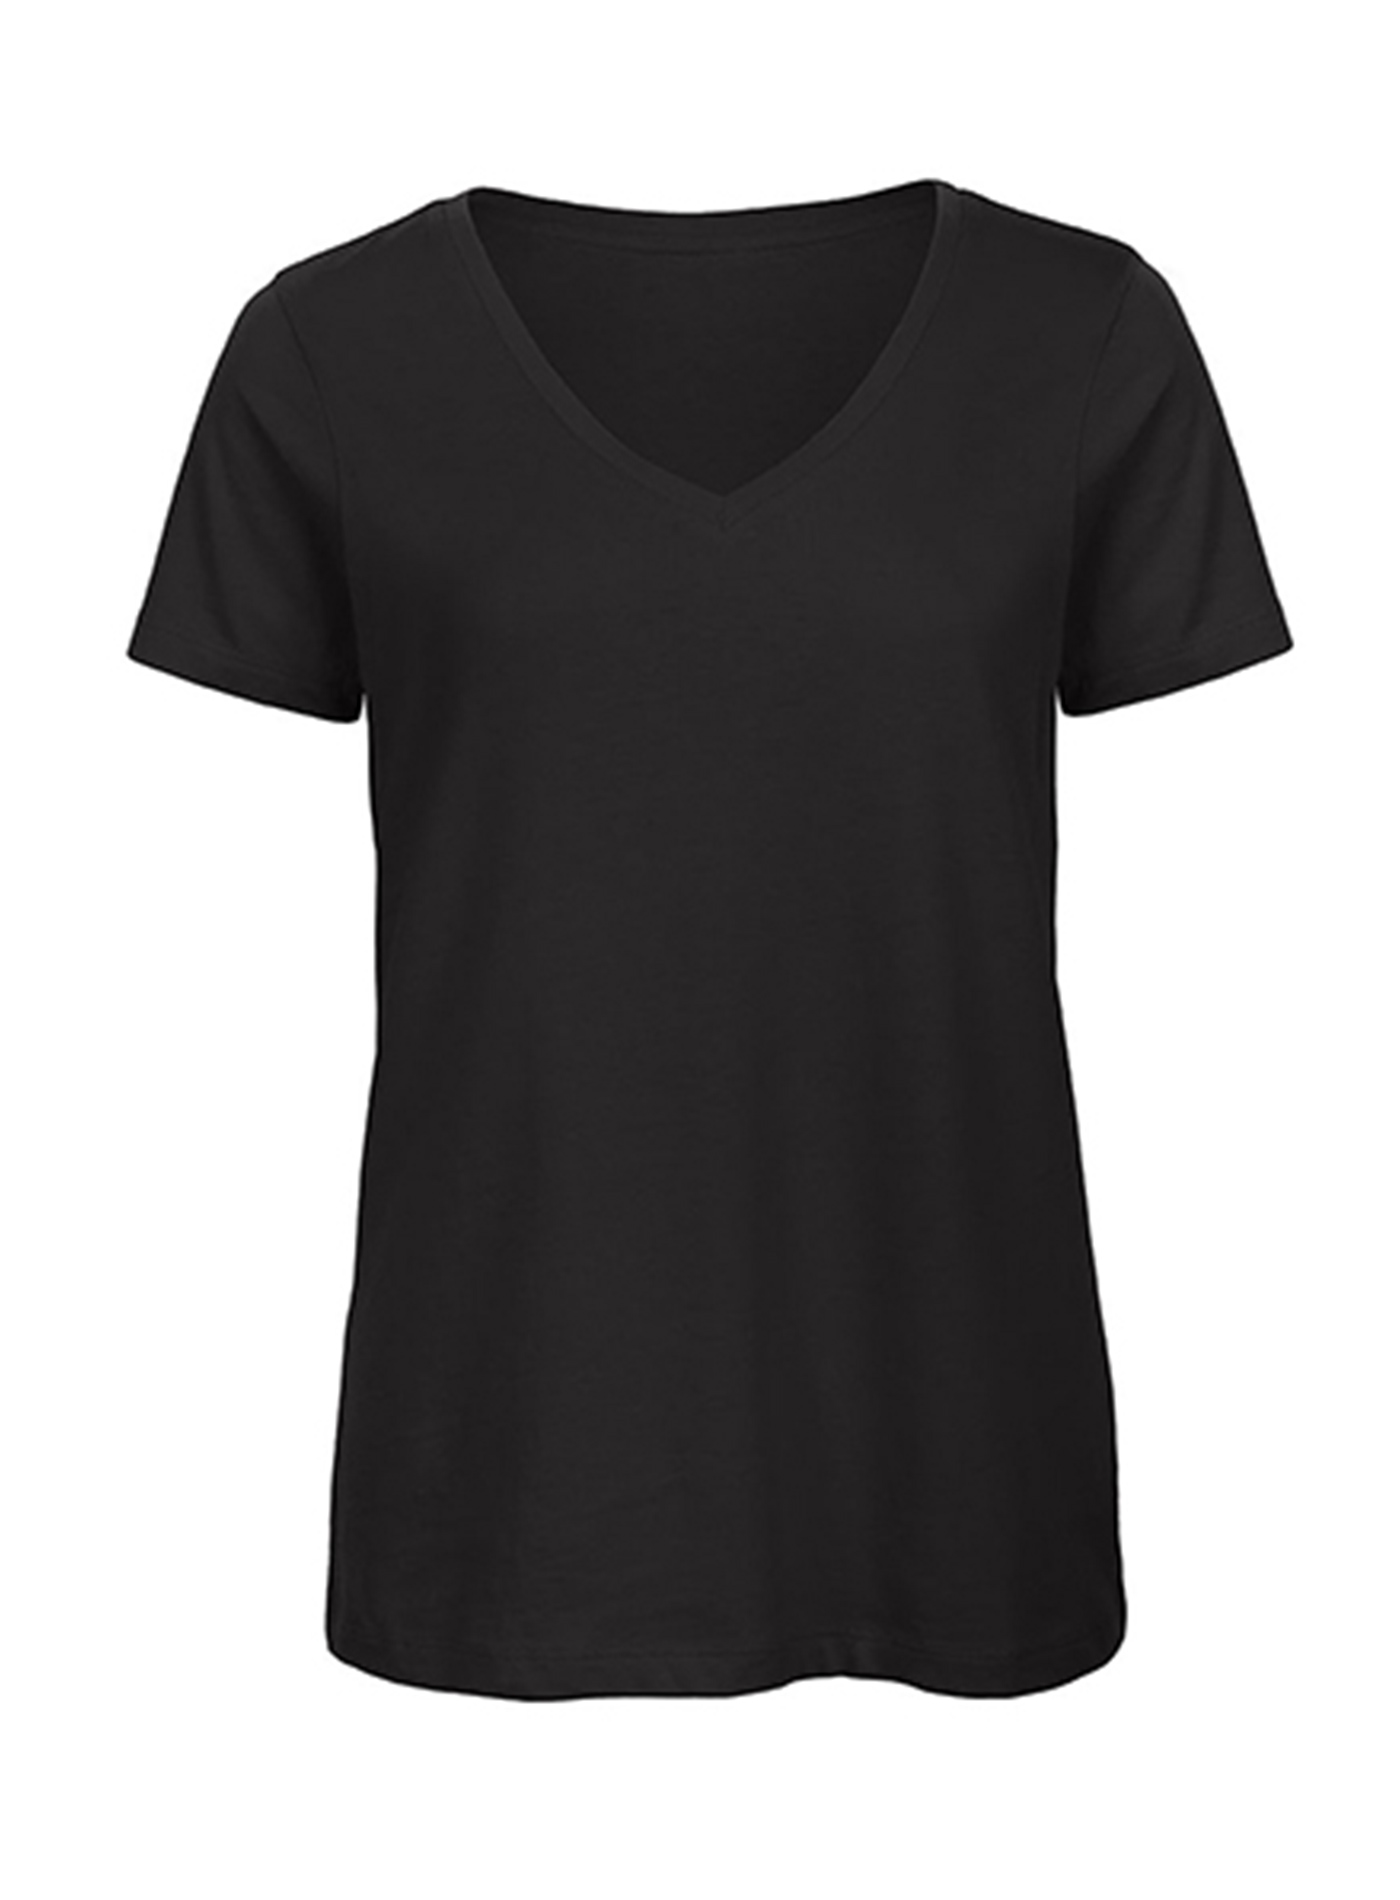 Dámské tričko s výstřihem do V B&C Collection Inspire - černá XL